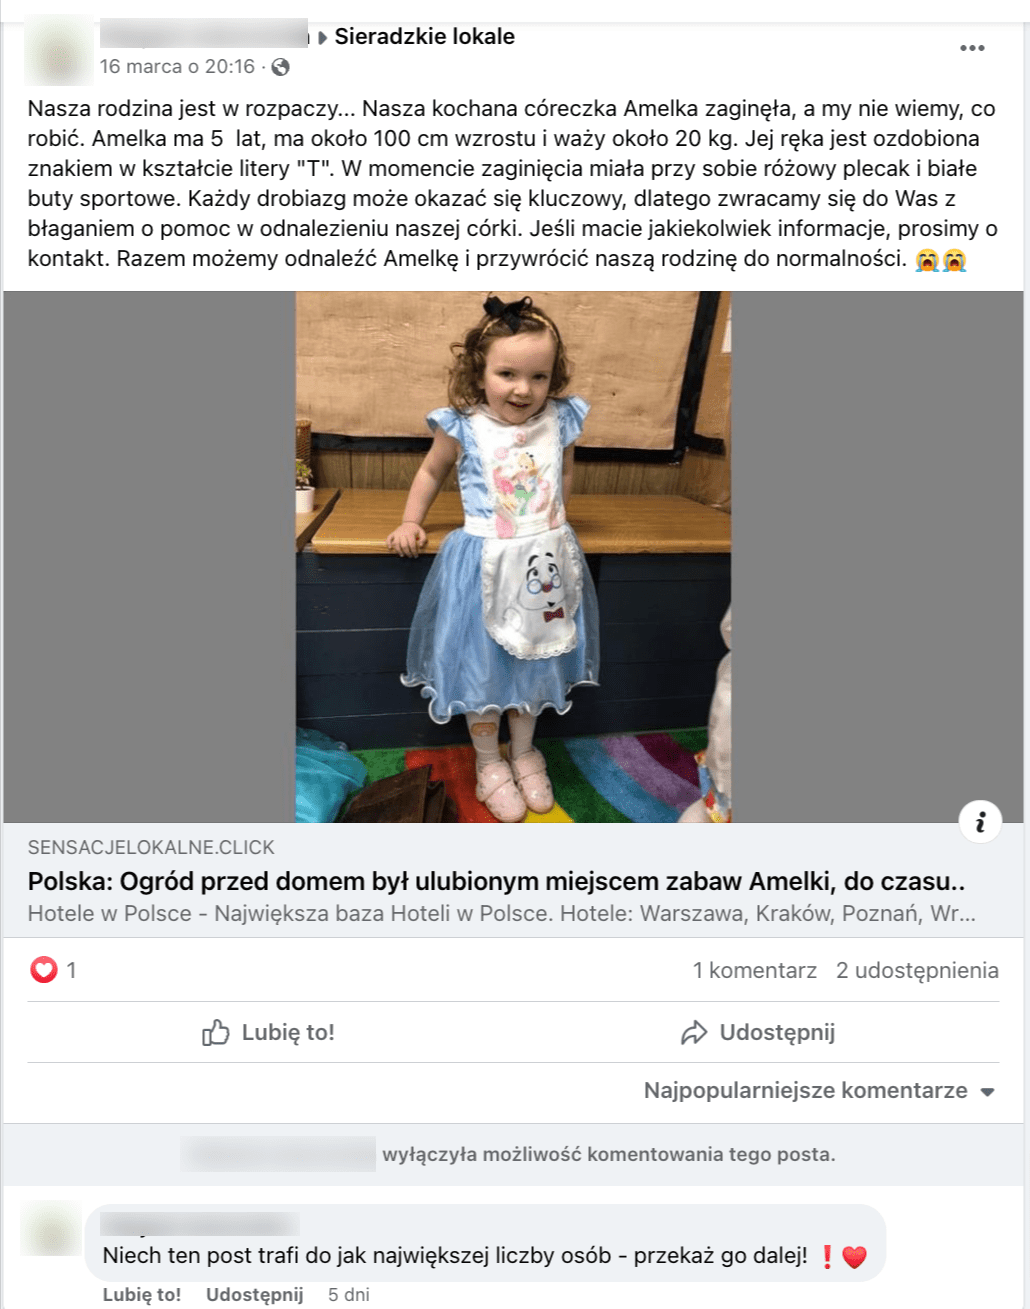 Zrzut ekranu z Facebooka. Do posta dołączono zdjęcie małej dziewczynki.